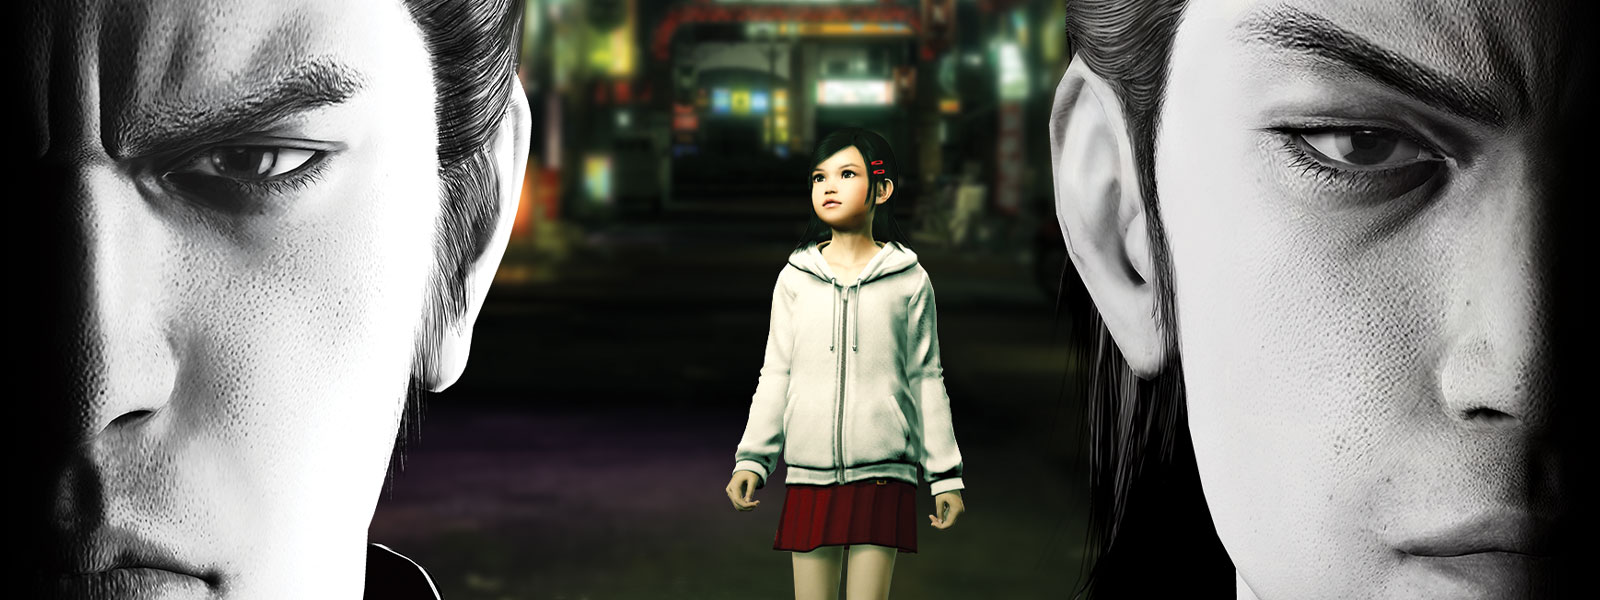 Deux personnages Yakuza ont un air sombre, tandis qu’une petite fille se tient dans la ville derrière eux.